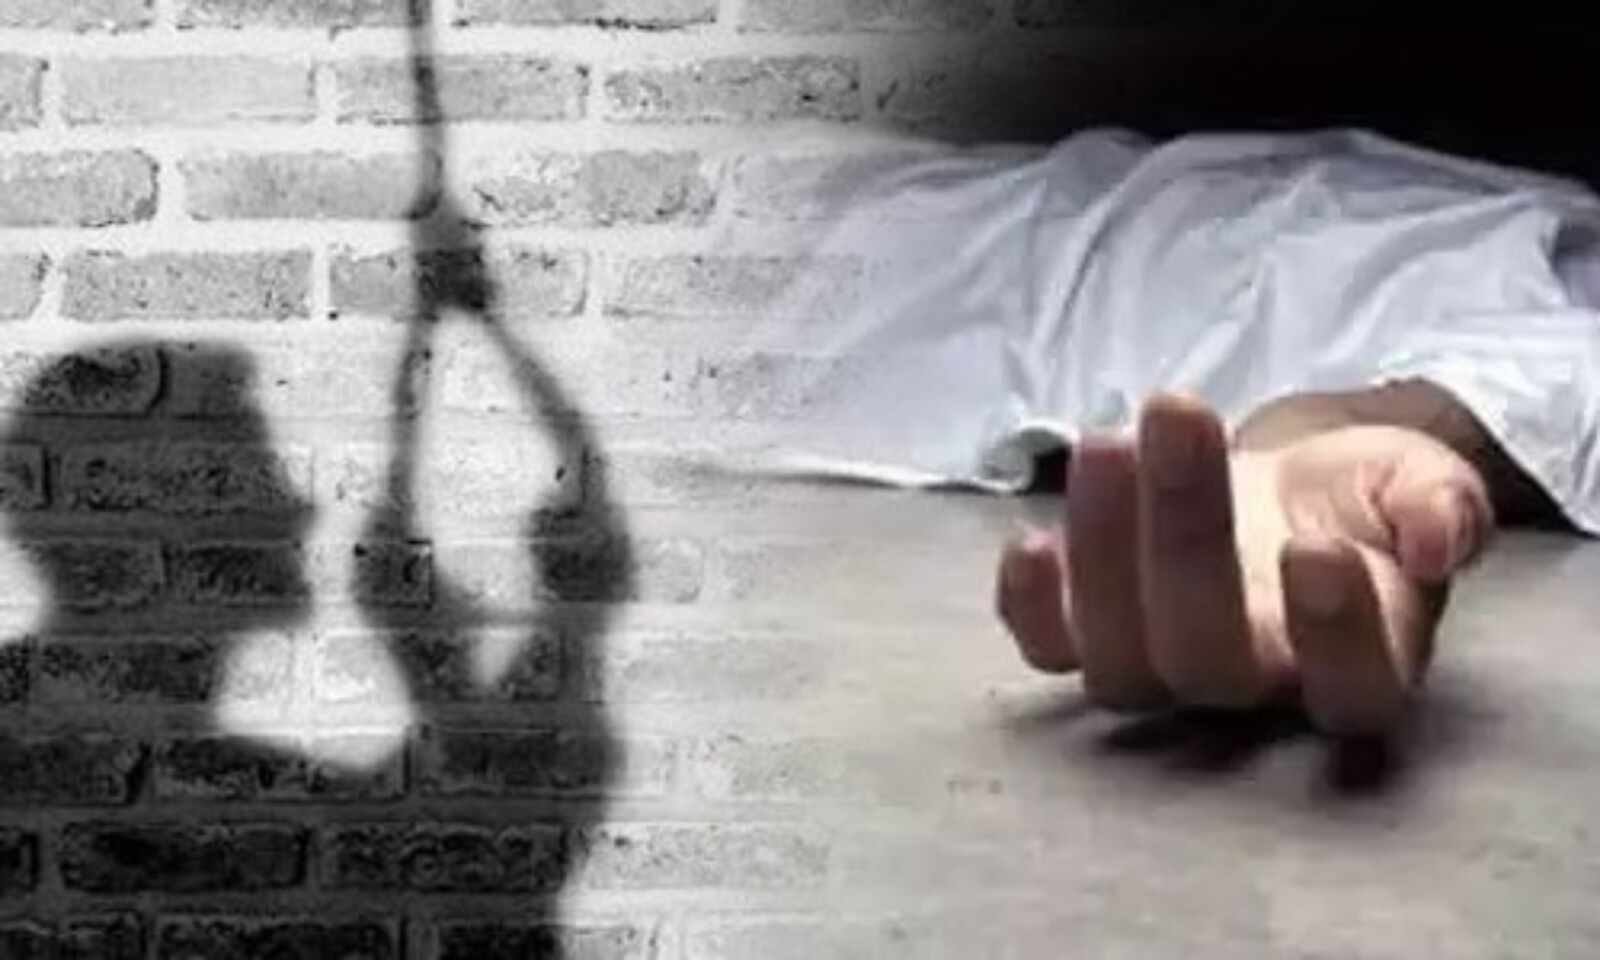 राजकीय इंटर कॉलेज सिलंगी में तैनात प्रवक्ता ने फांसी लगाकर की आत्महत्या